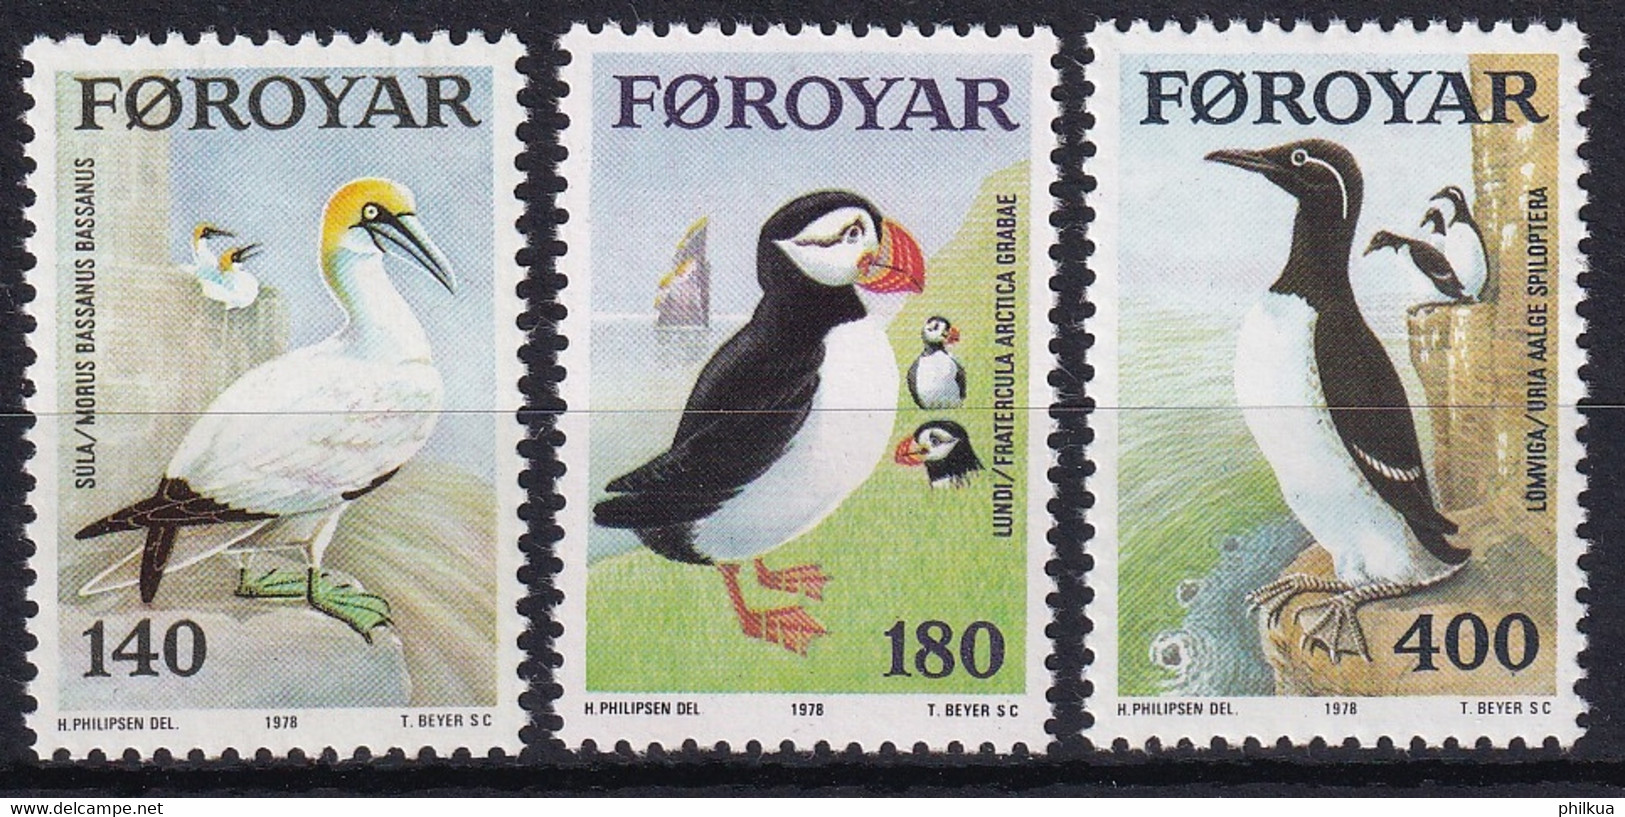 MiNr. 36 - 38 Dänemark Färöer 1978, 13. April. Seevögel - Postfrisch/**/MNH - Färöer Inseln